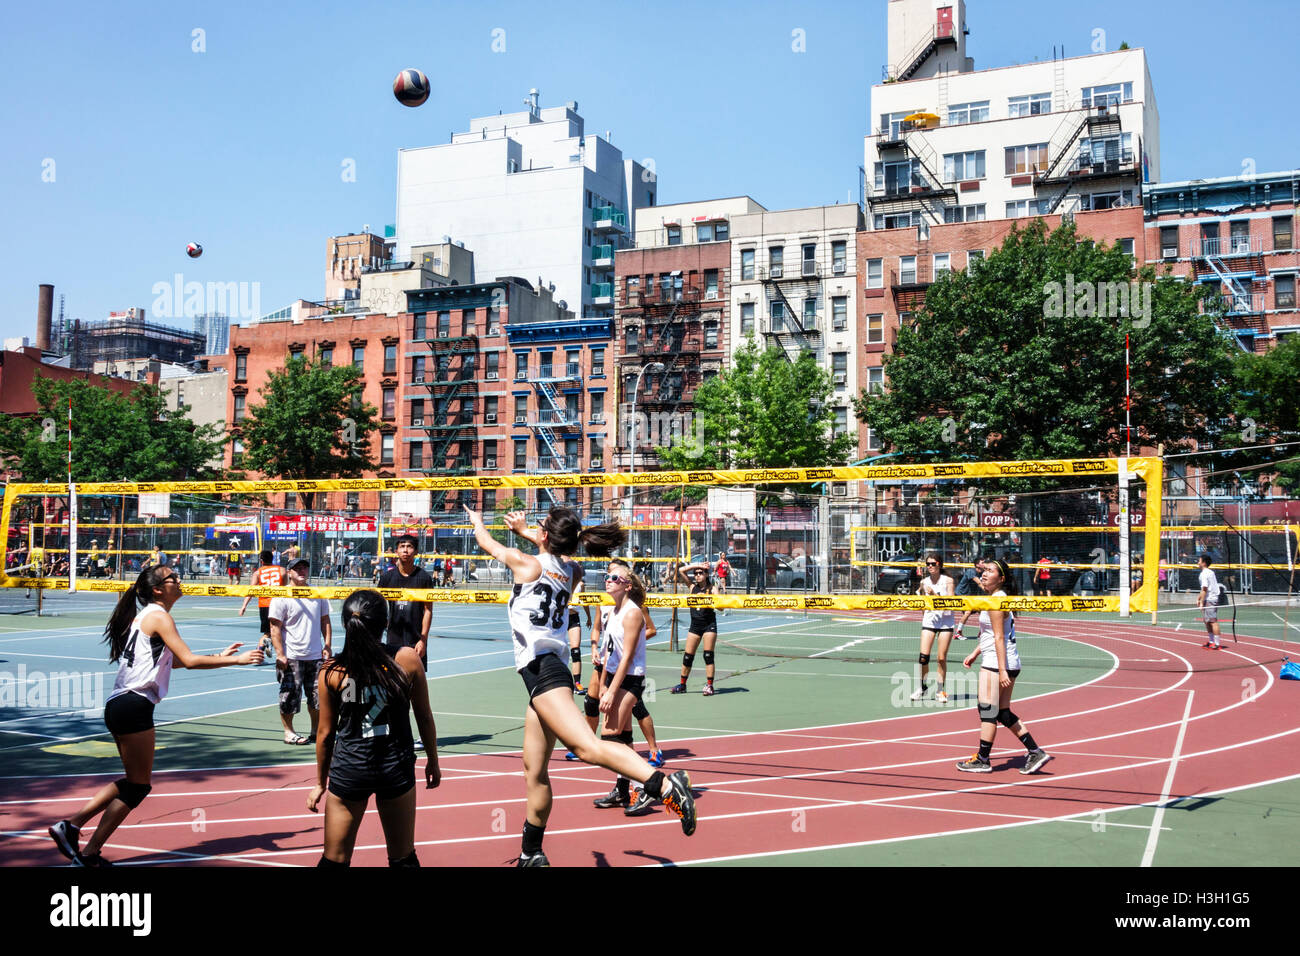 New York City,NY NYC Lower Manhattan,Chinatown,Seward Park,parc public,terrain d'athlétisme,sports de loisirs,tournoi de mini-volley,volley,court, Banque D'Images